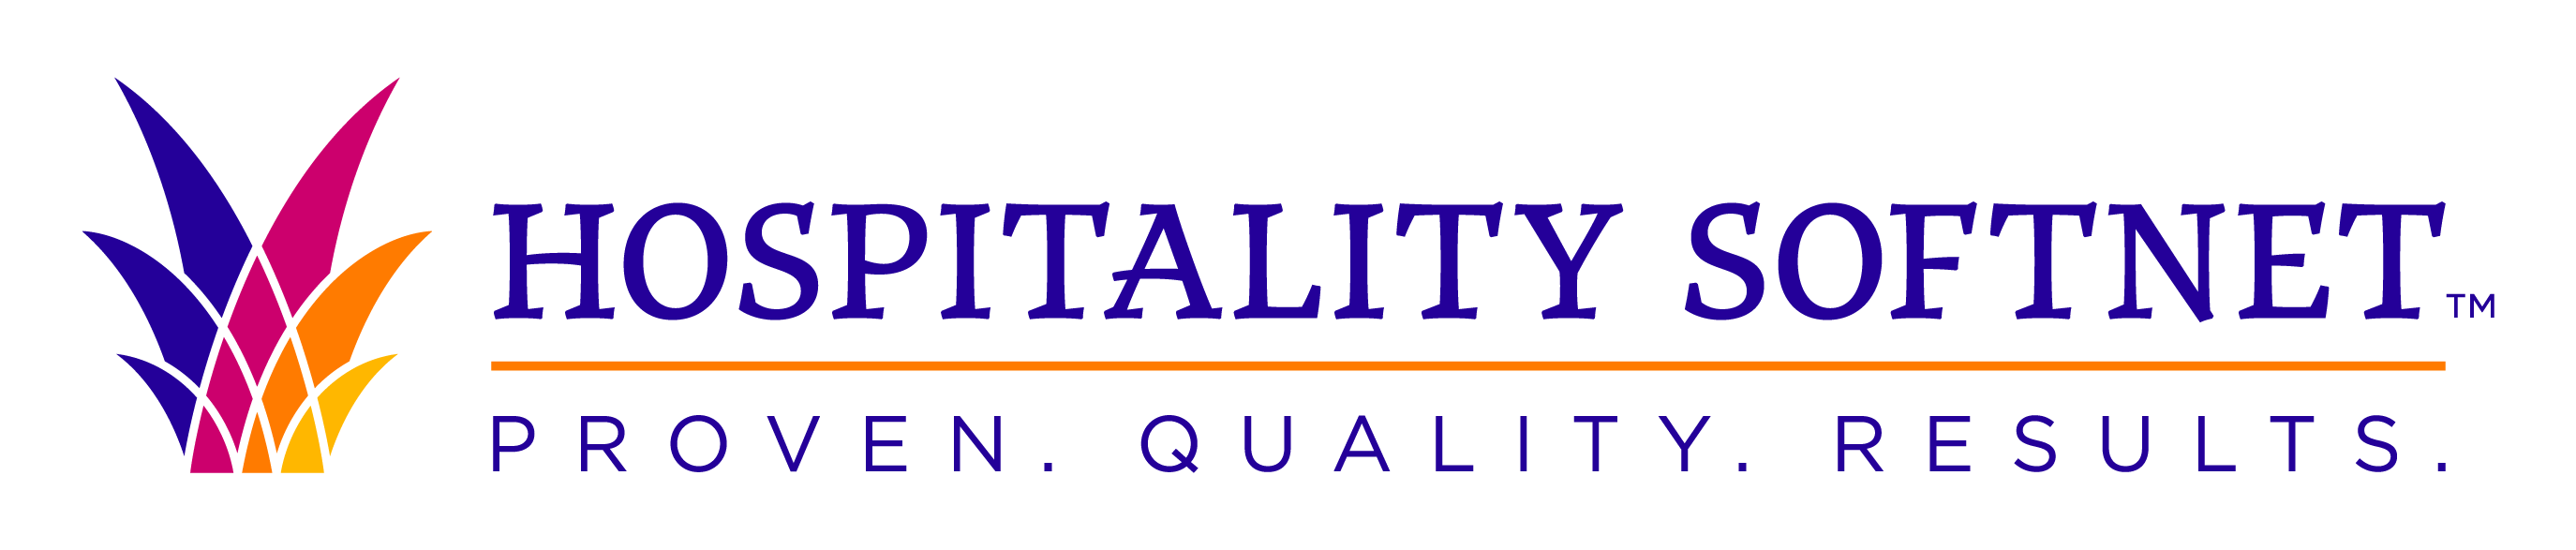 Logo for Hospitality Softnet - Orlando